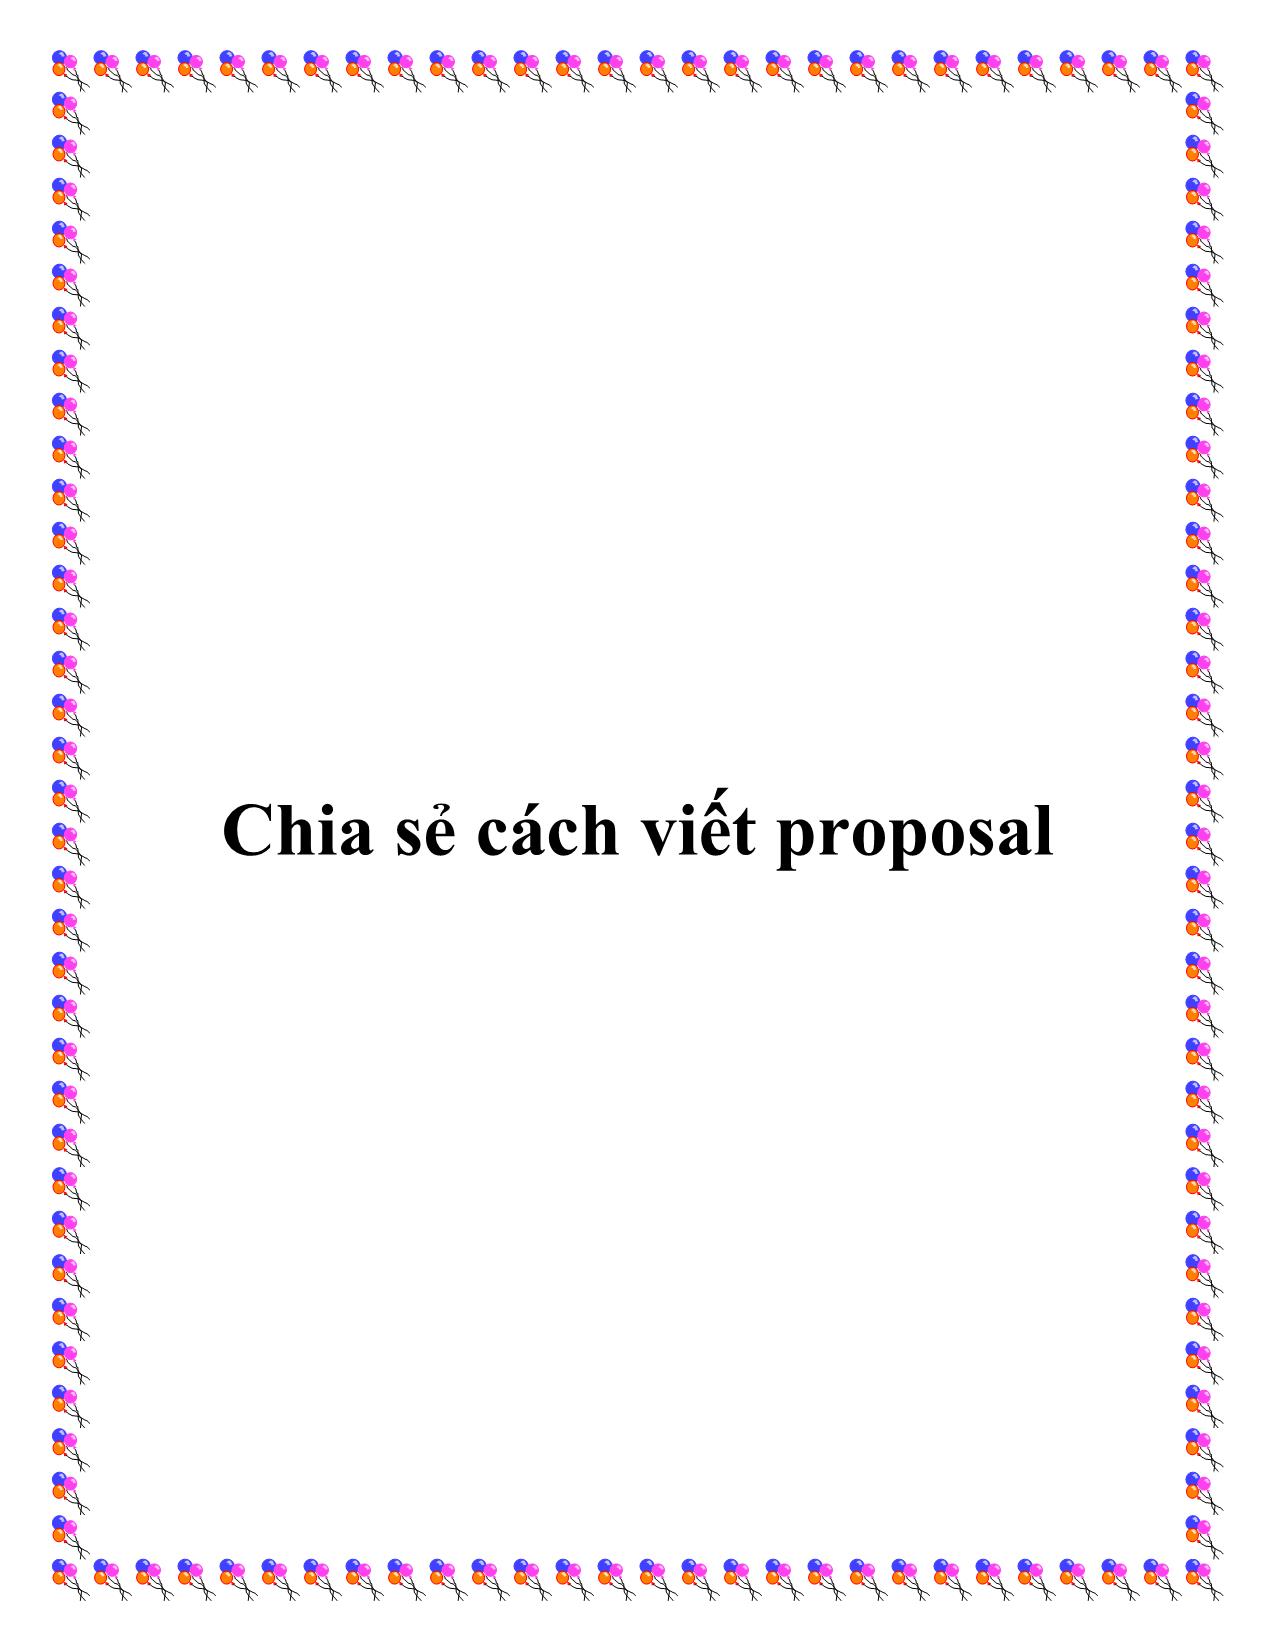 Chia sẻ cách viết proposal trang 1